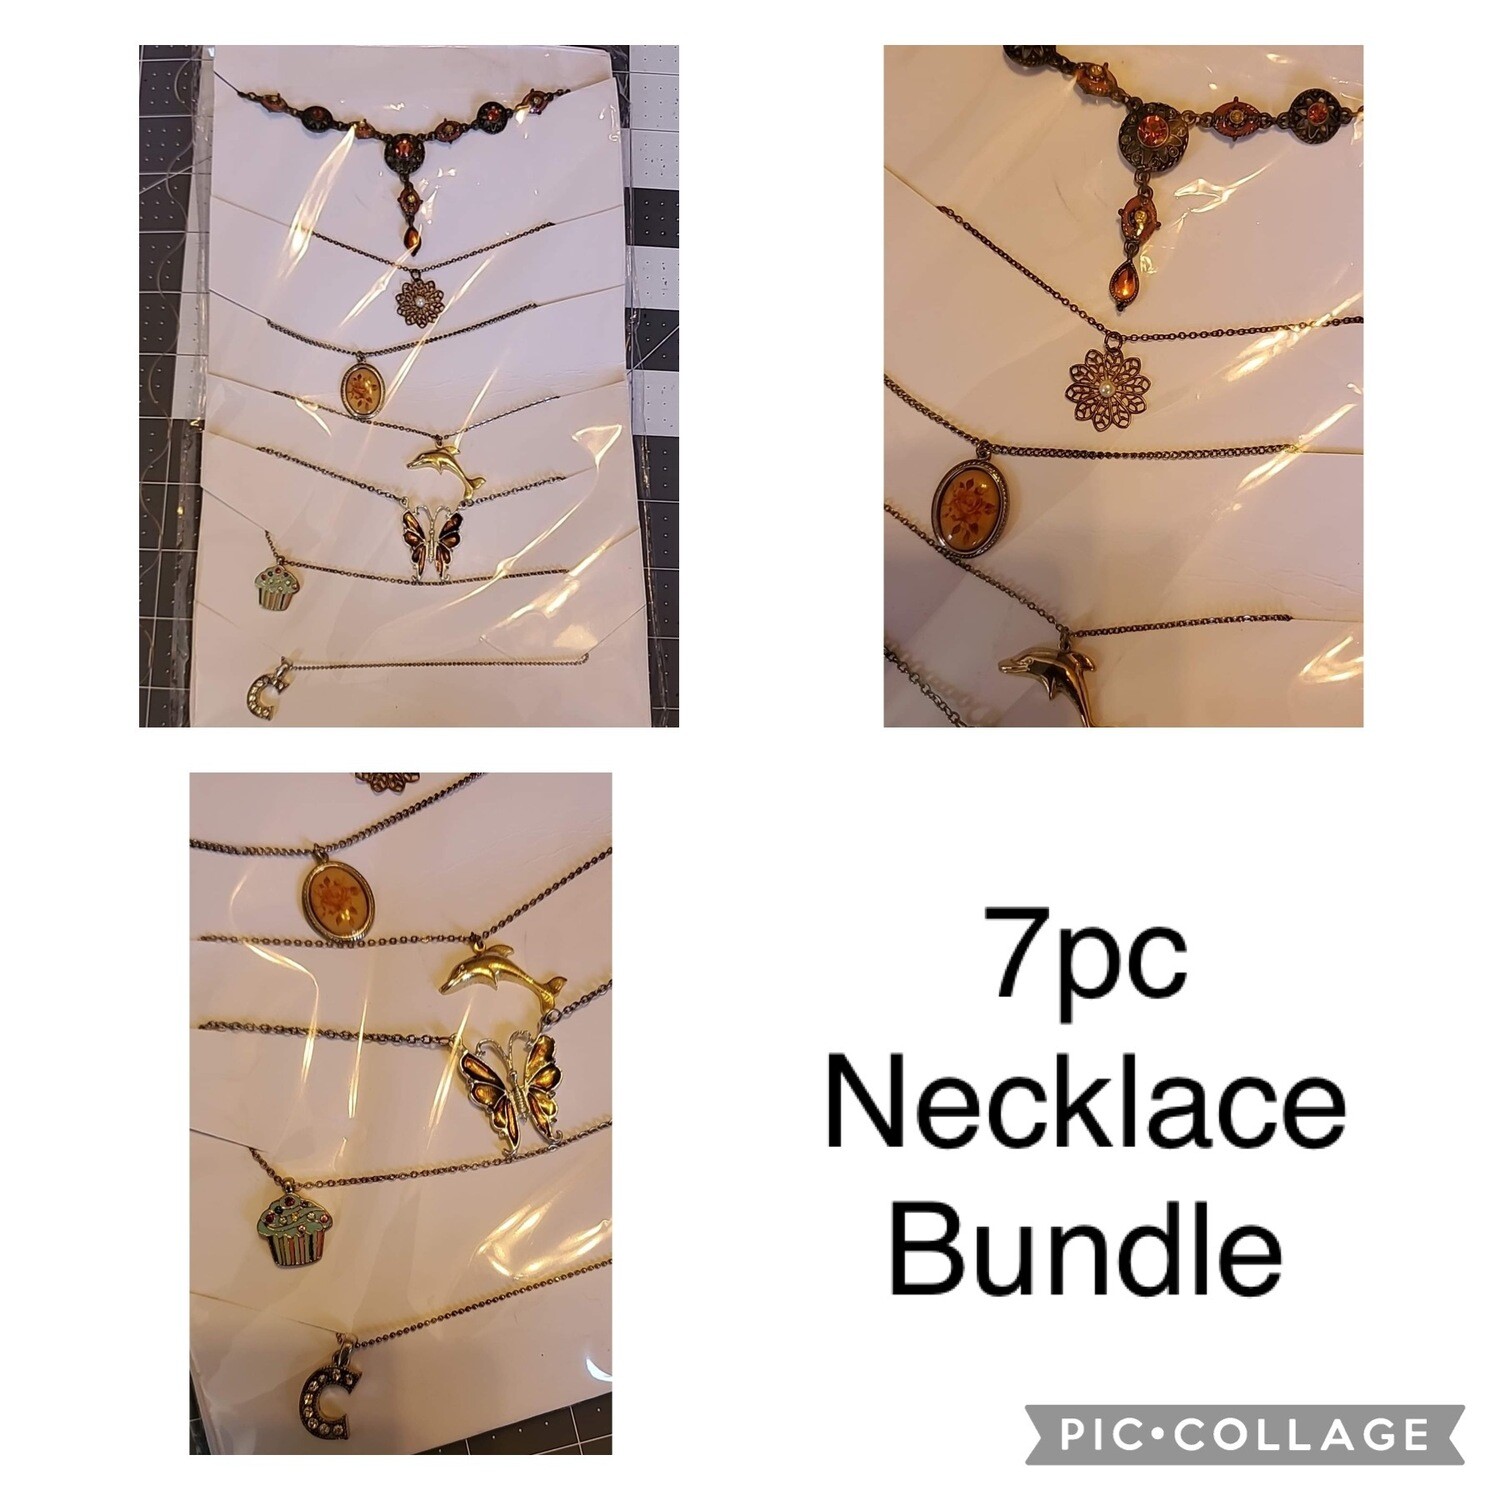 7pc Necklace Bundle